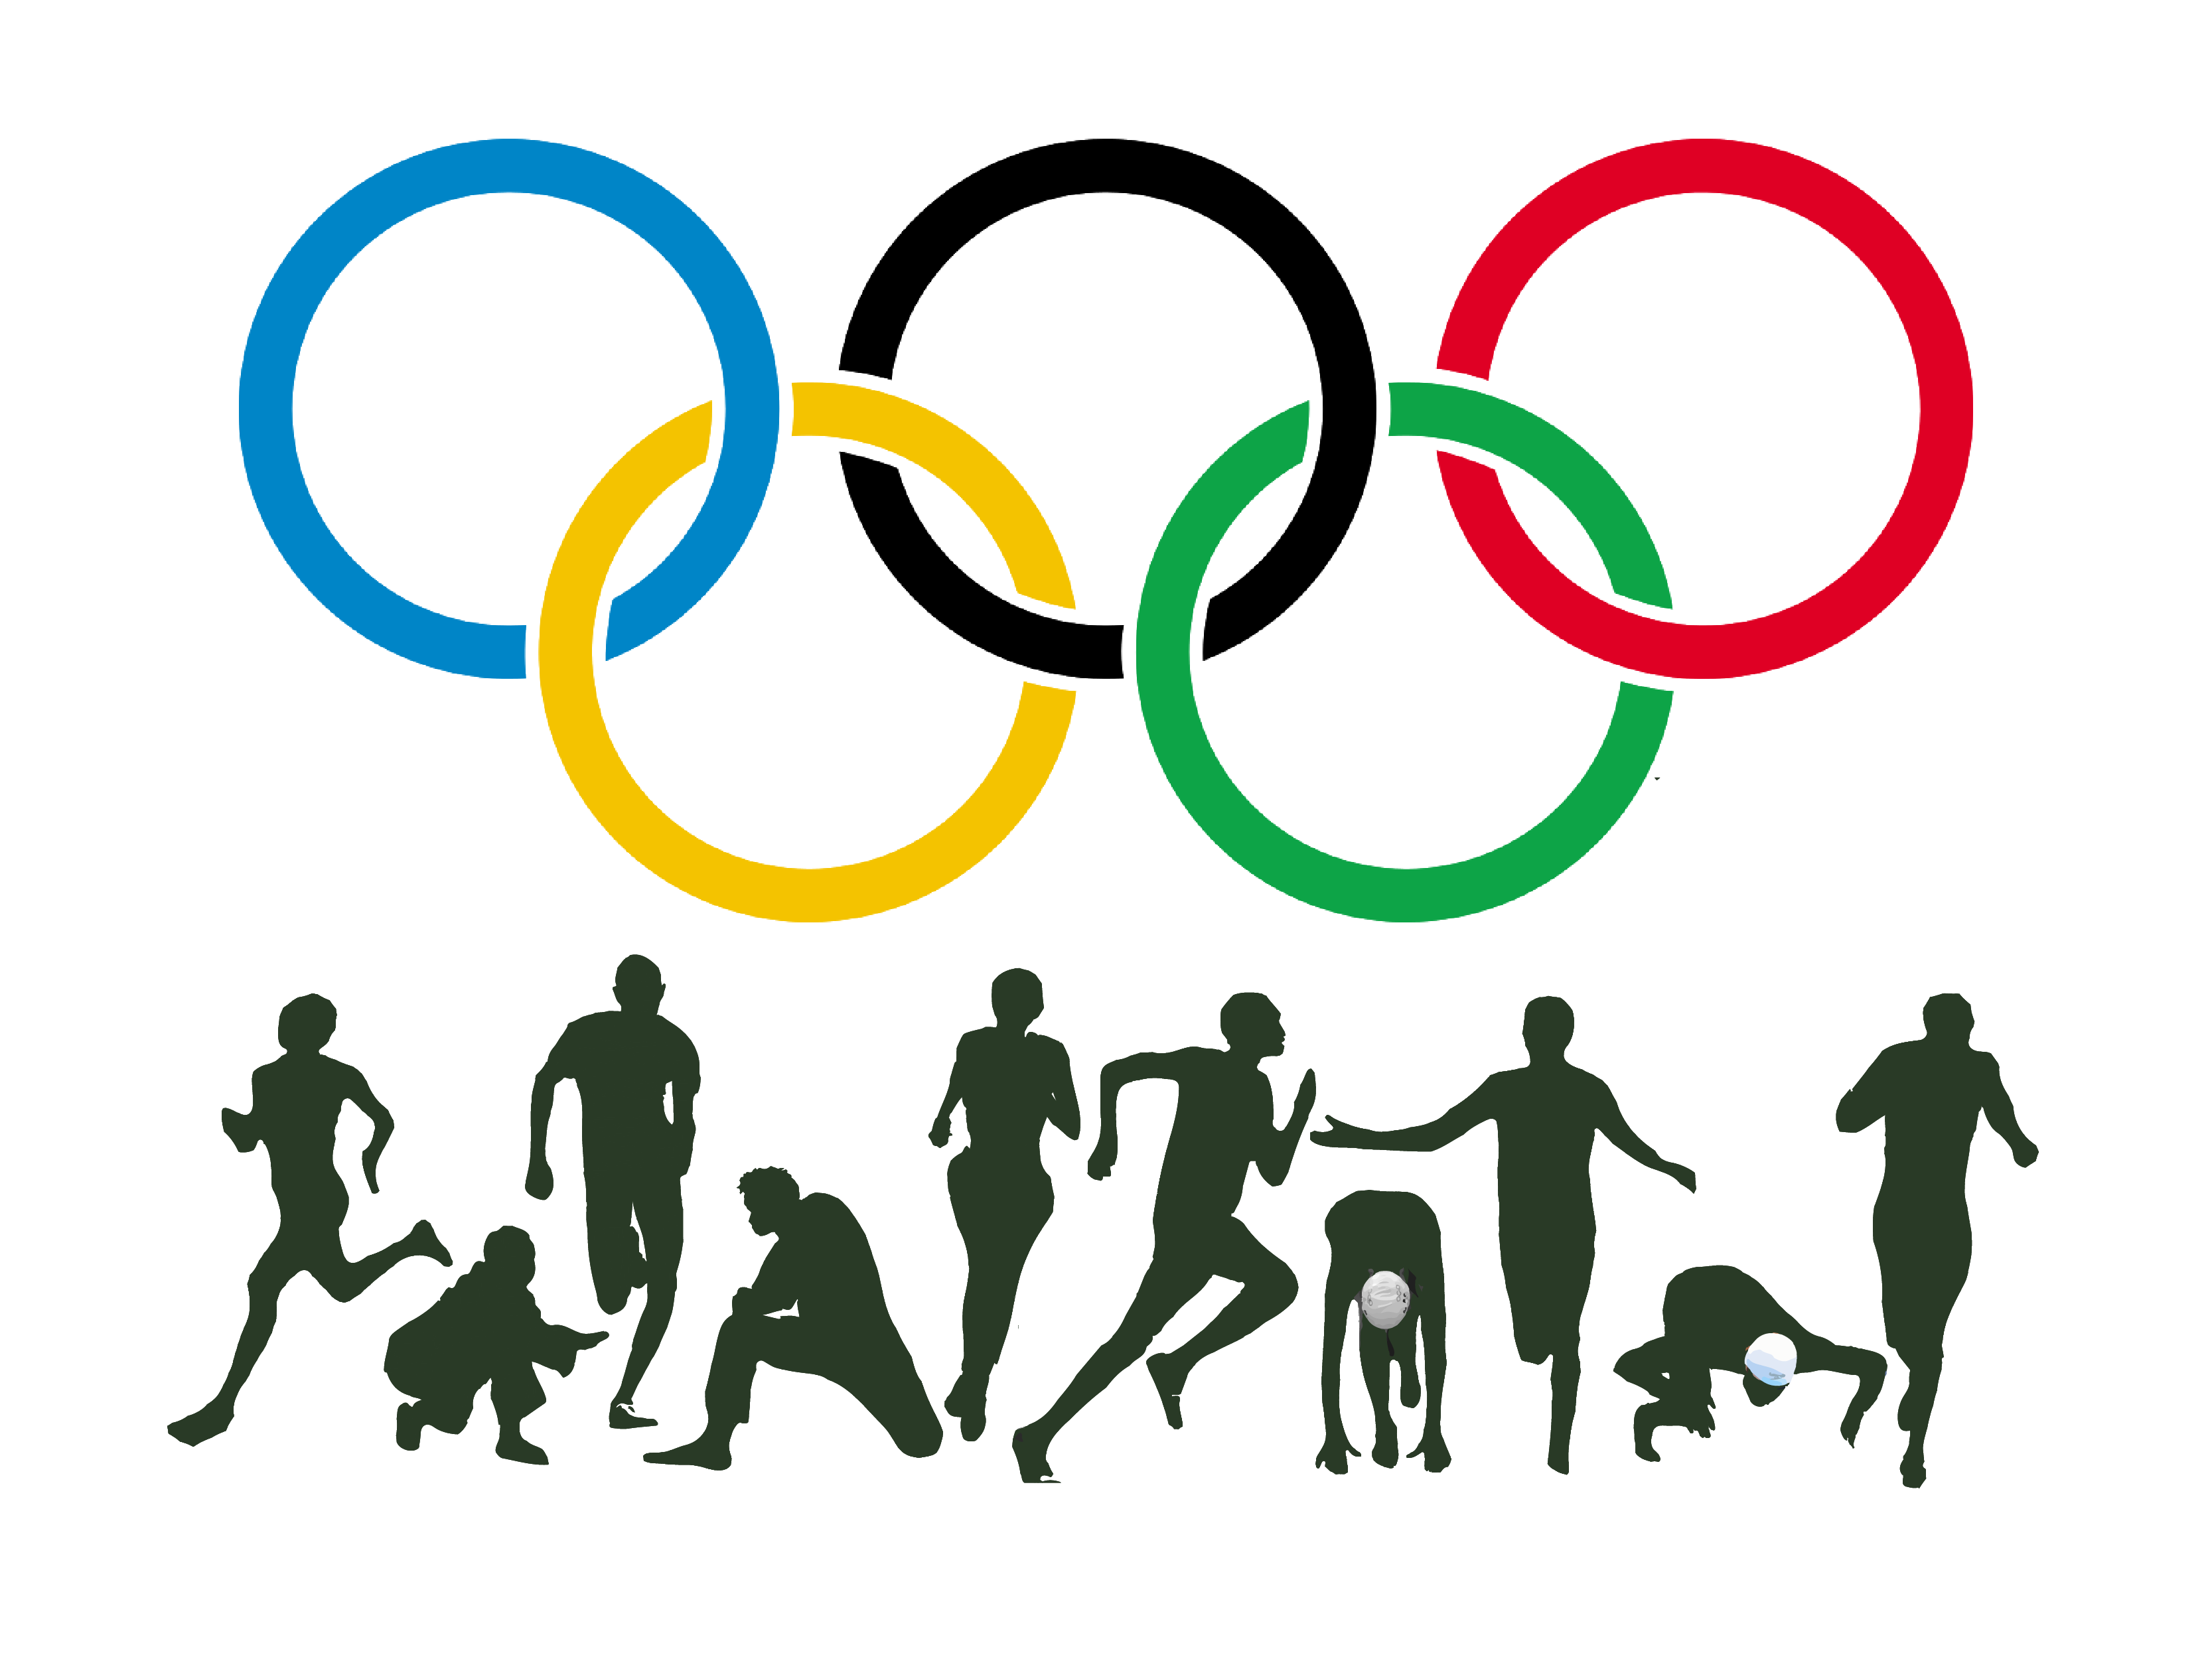 Спортивные соревнования темы. Спортивные эмблемы. Символ спорта. Логотип Олимпийских игр. Легкая атлетика символ.